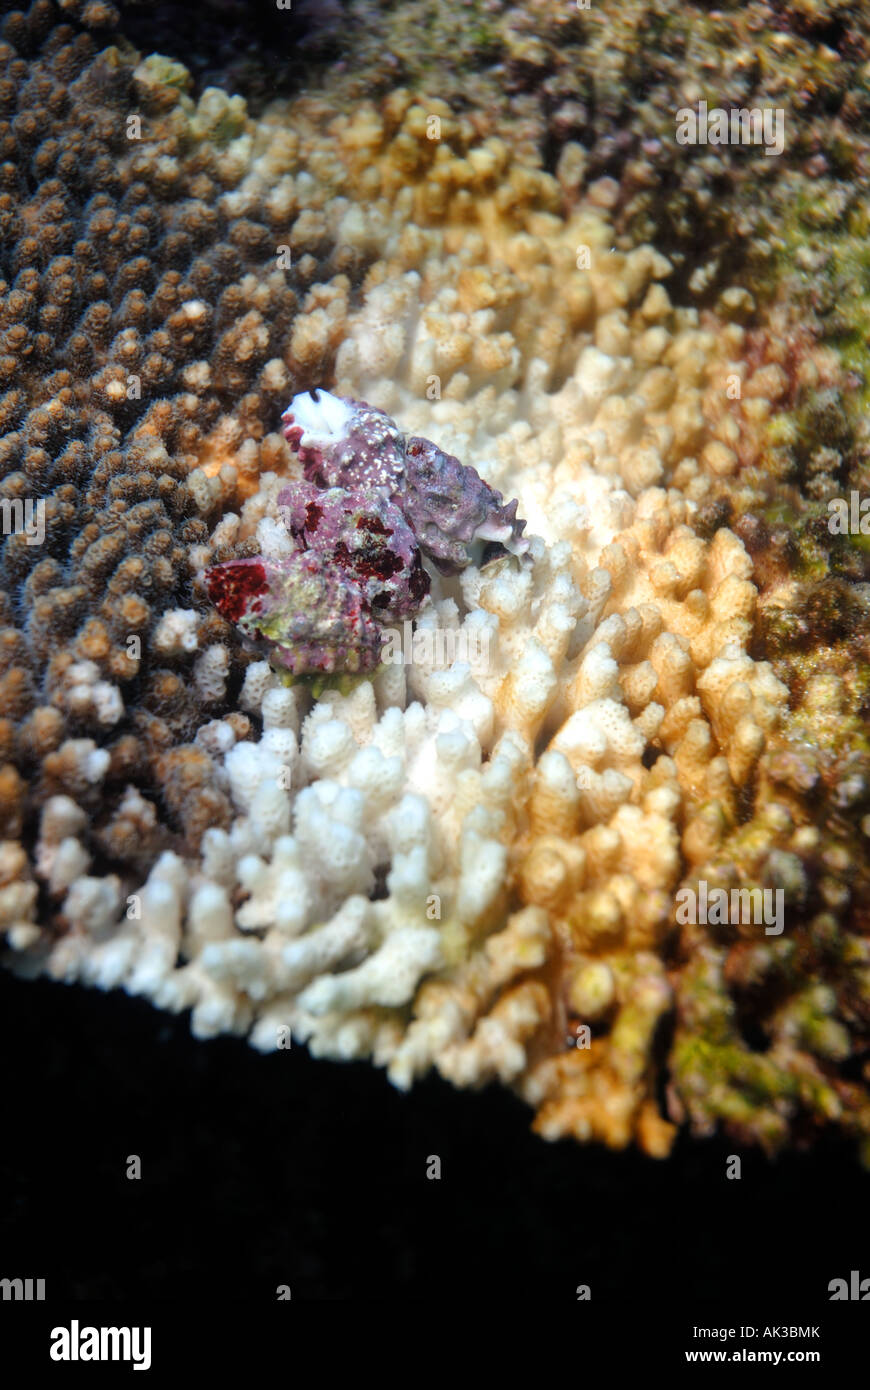 Purple coral-eating snails (Drupella cornus) feeding on coral, Ningaloo Reef Marine Park, Western Australia Stock Photo